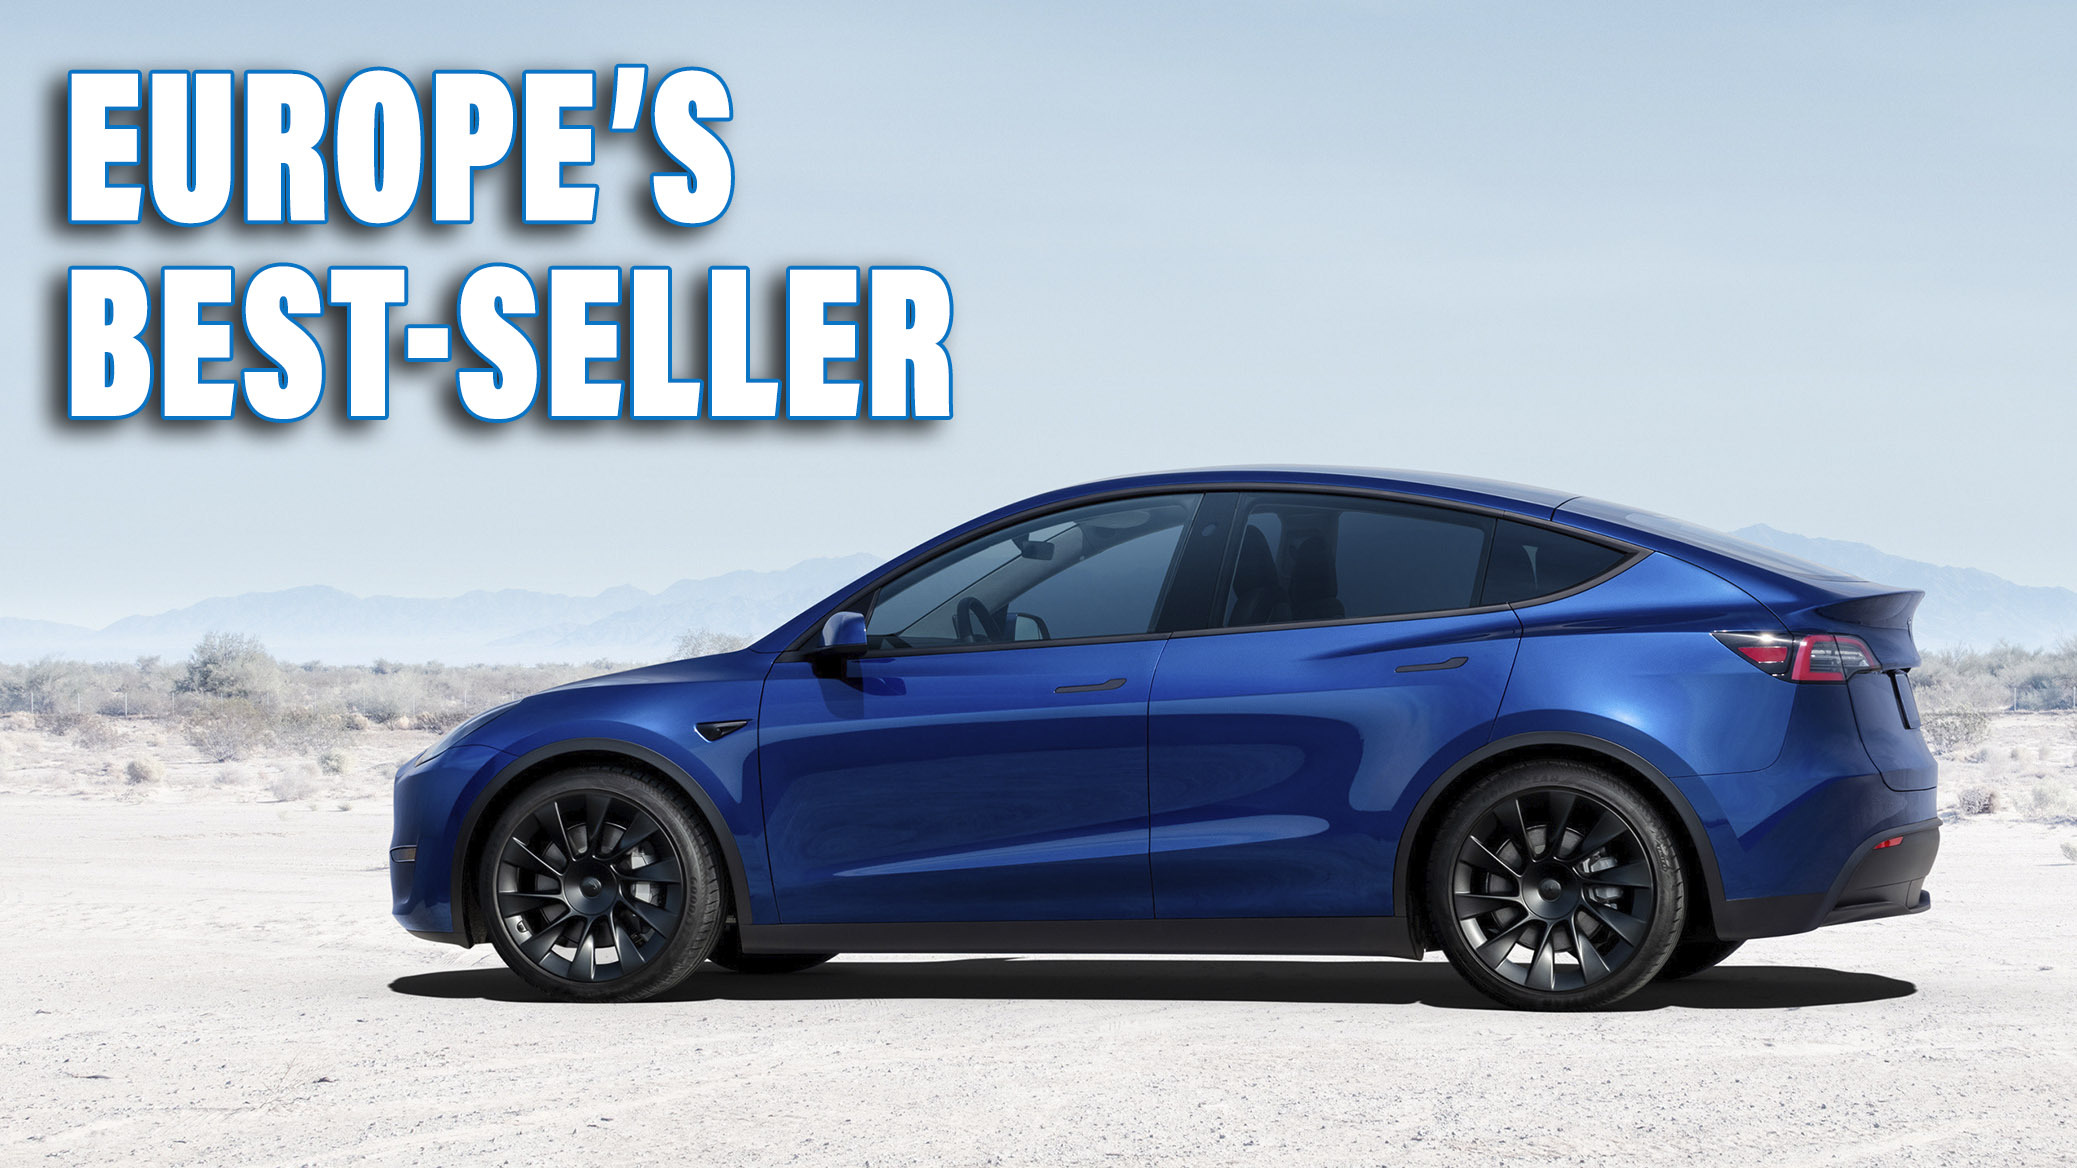 The Tesla Model Y is Europe's top-selling car -- again